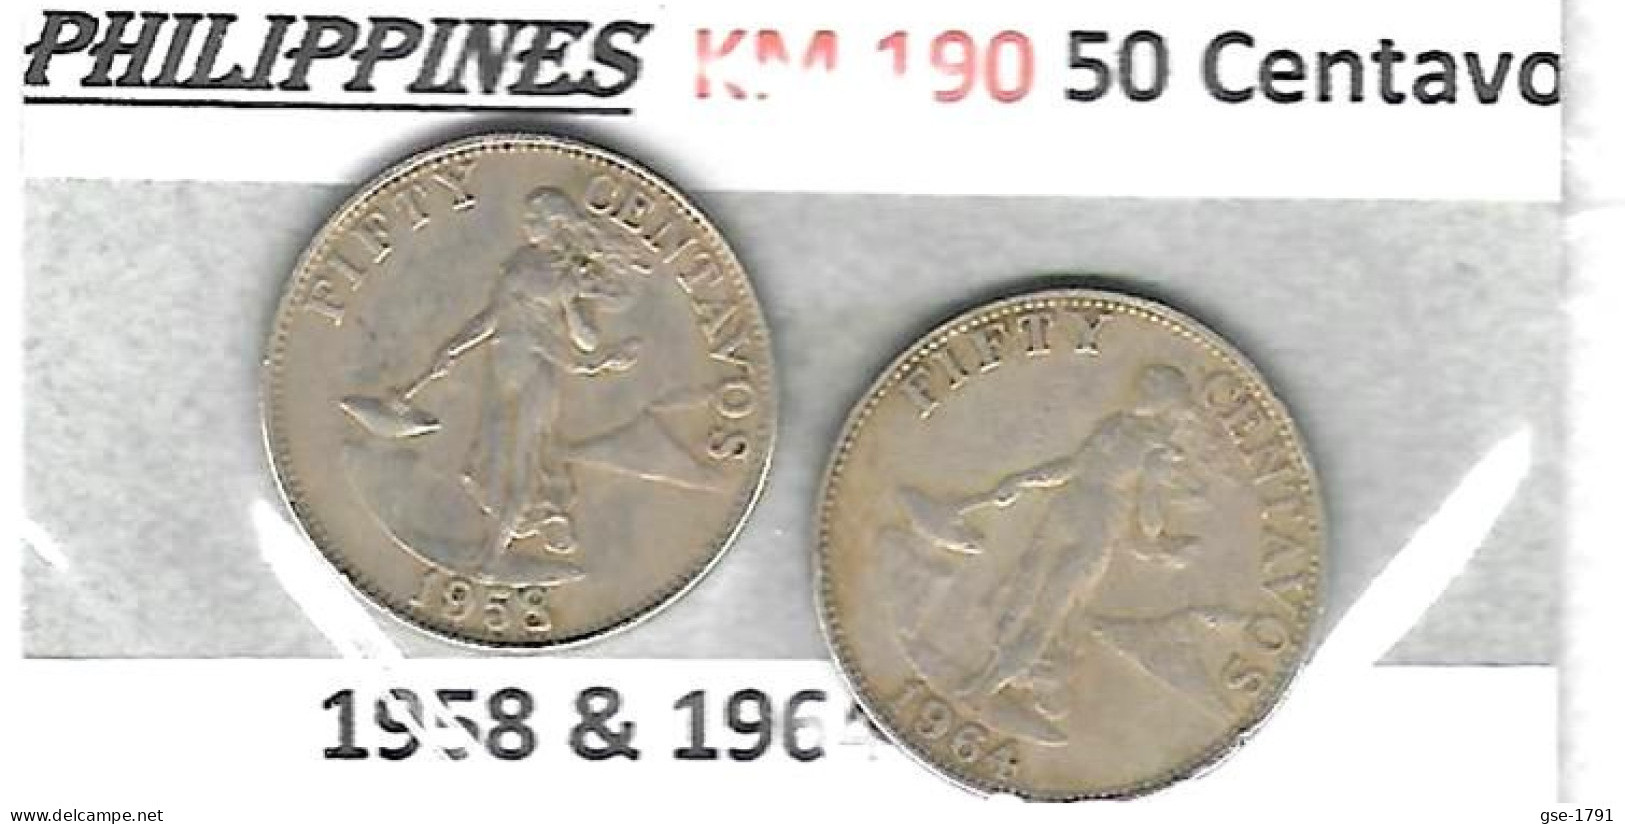 PHILIPPINES Républic Décimal, Petites Monnaies, Femme, 50 Centavos  KM  190 - Philippinen